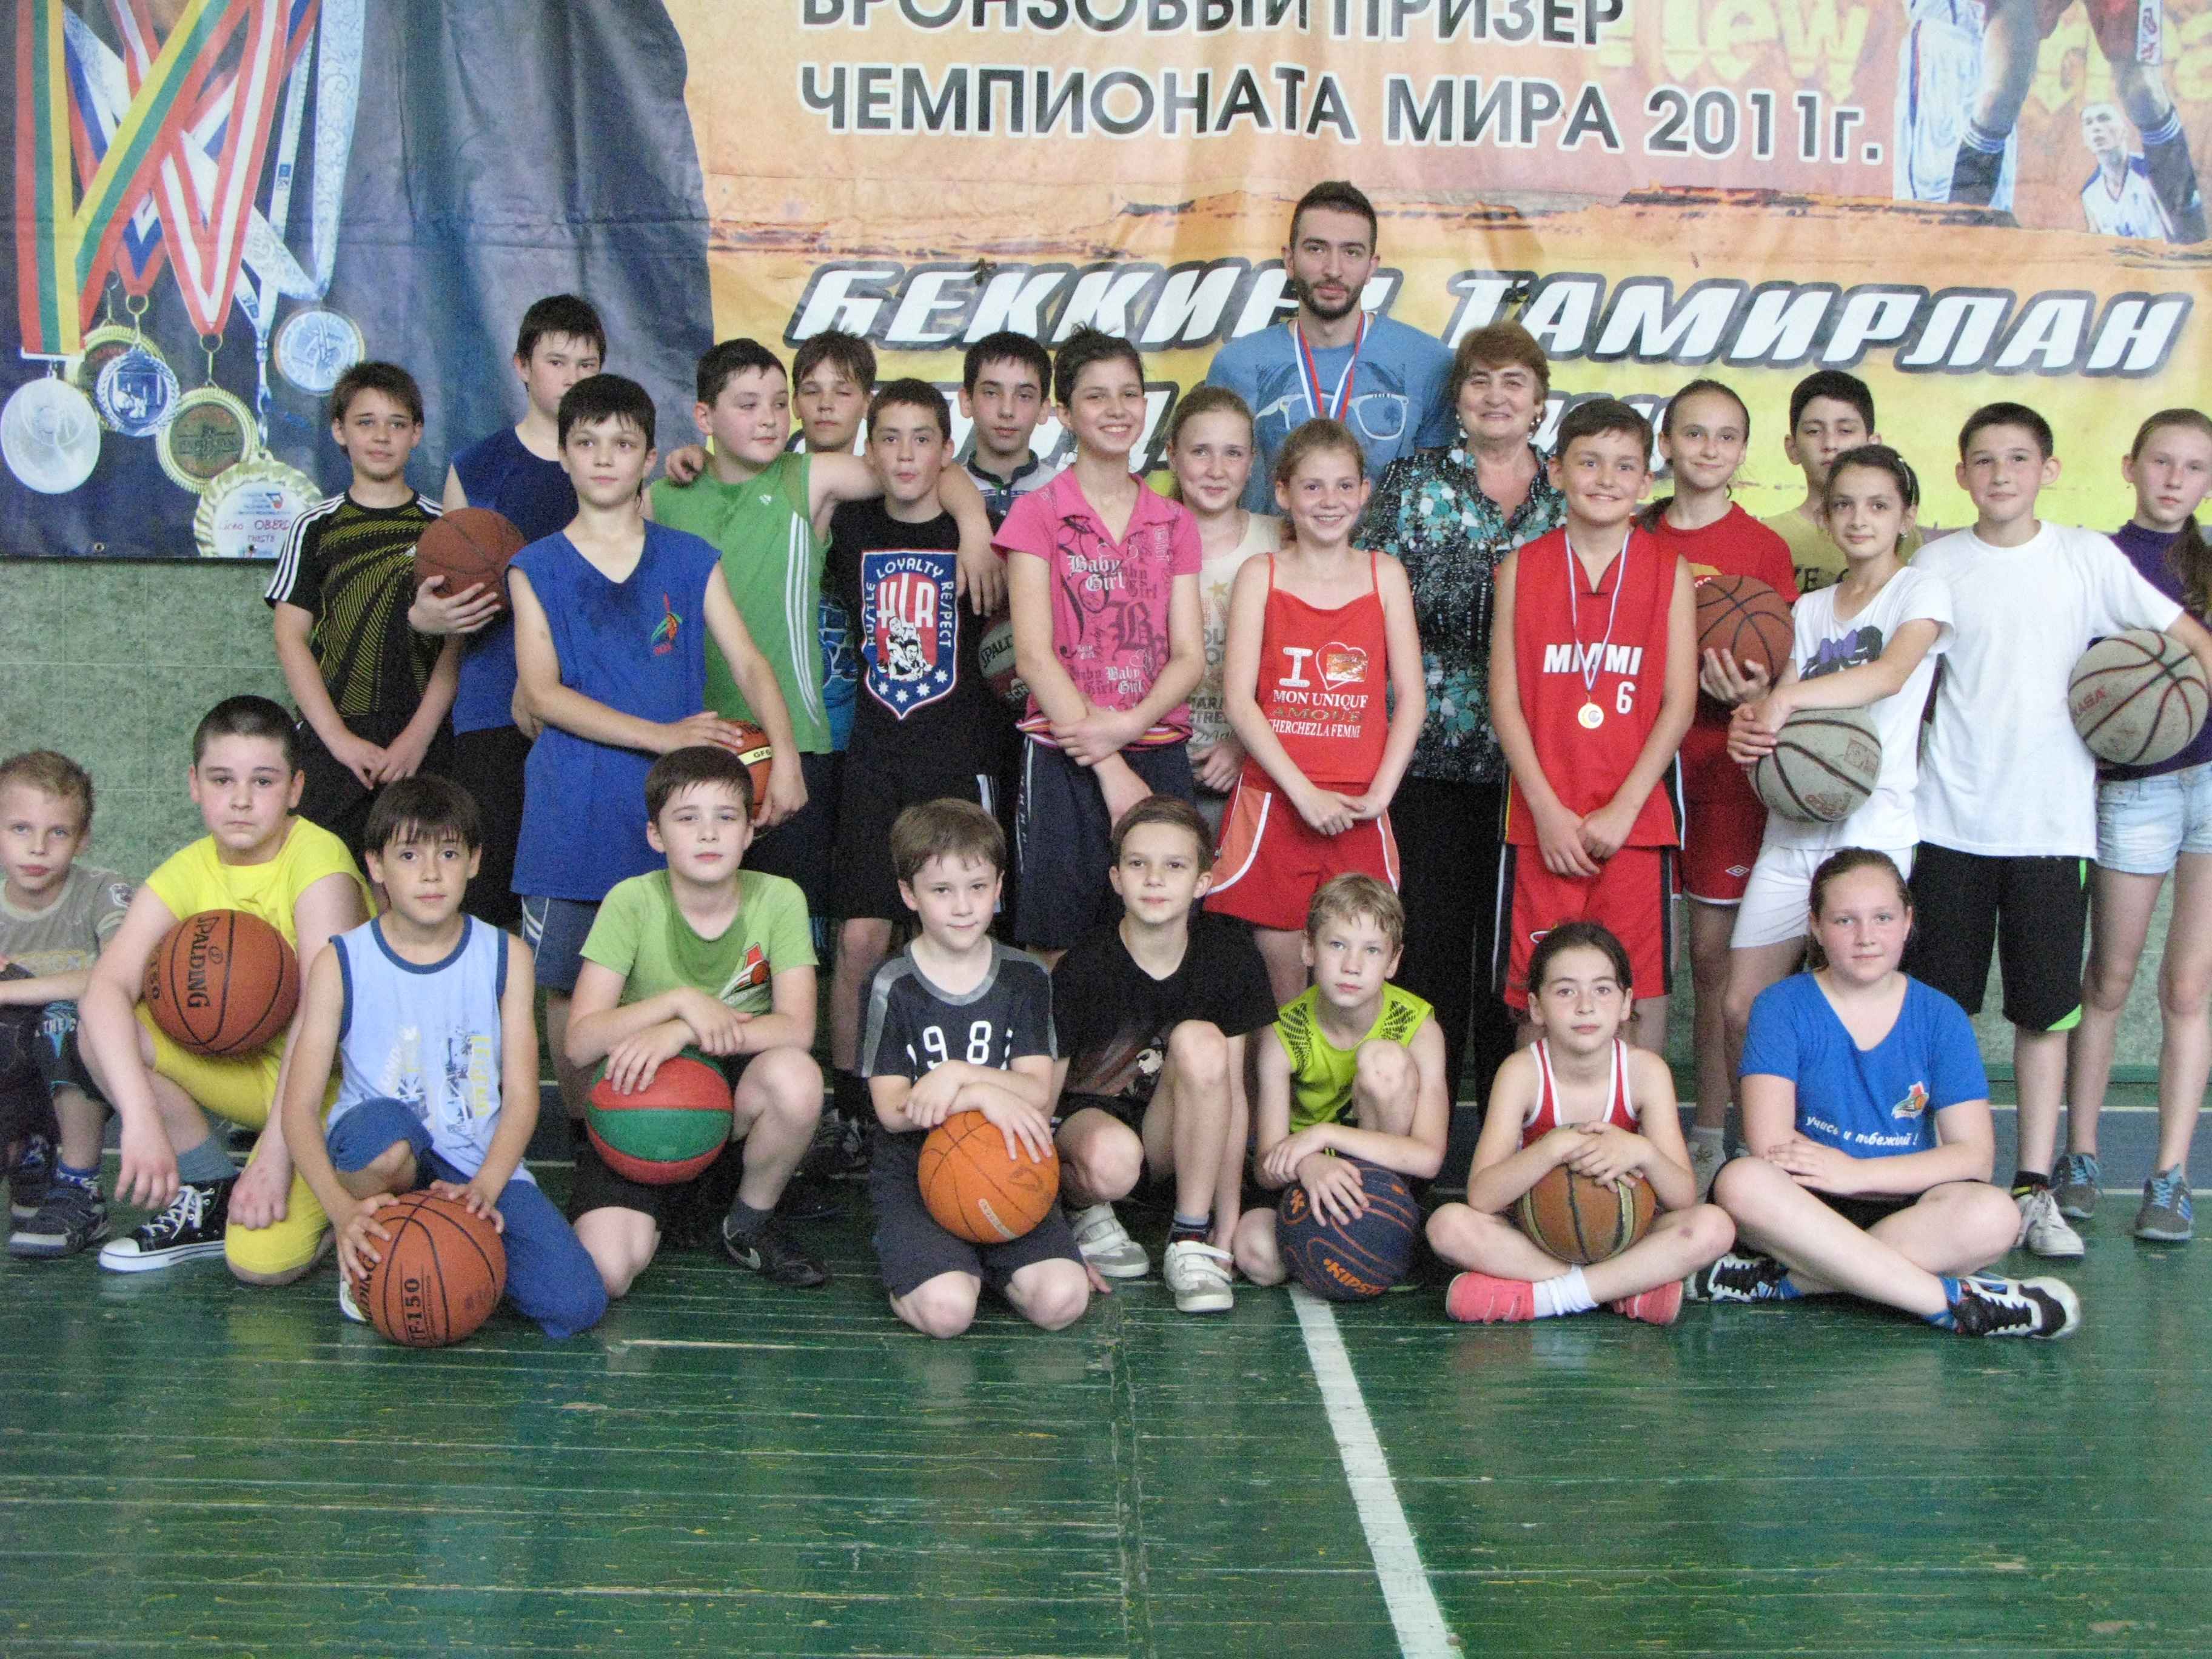 Баскетболисты Беккиевы на небосклоне республики